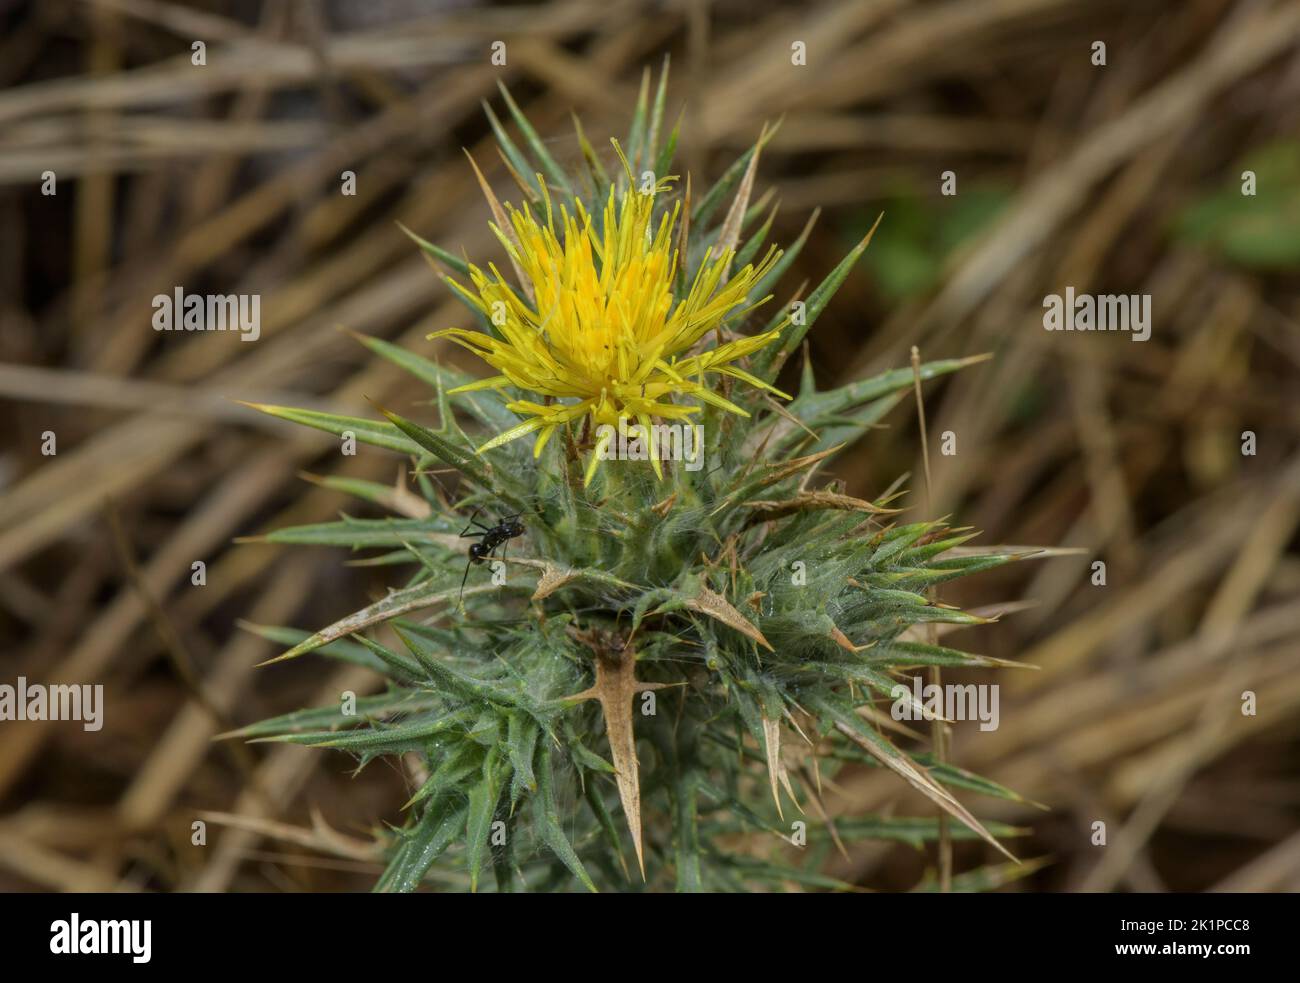 Discendente zafferano, Carthamus lanatus, in fiore nei Pirenei pianeggianti. Erbacce invasive in alcune aree. Foto Stock